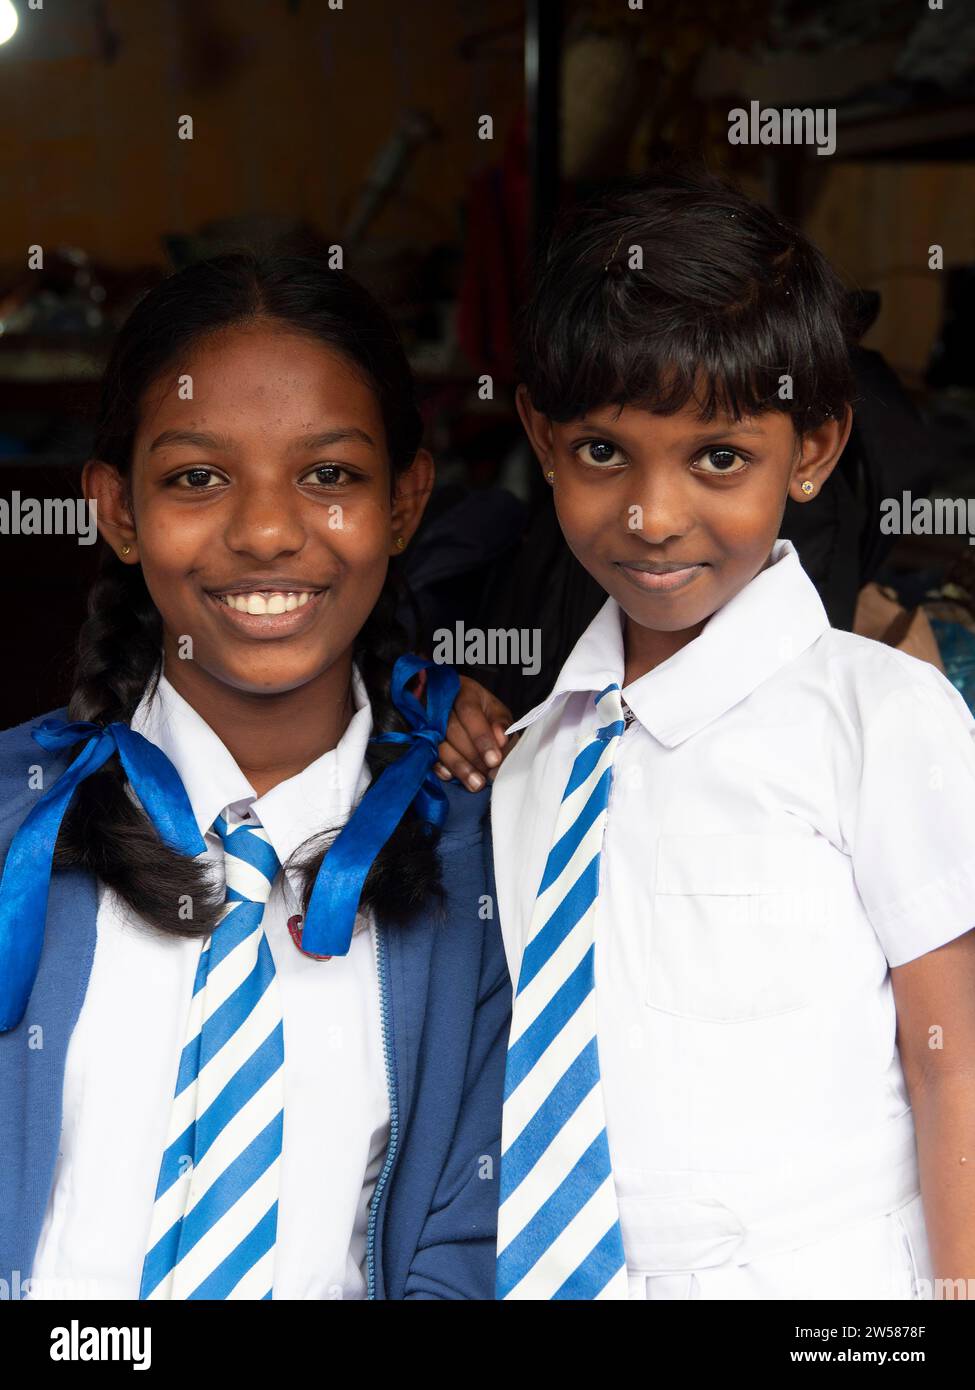 Singhalesische Schulmädchen mit weiß-blauer Kleidung, Krawatten, Zöpfen mit blauen Bändern, Sri Lanka Stockfoto